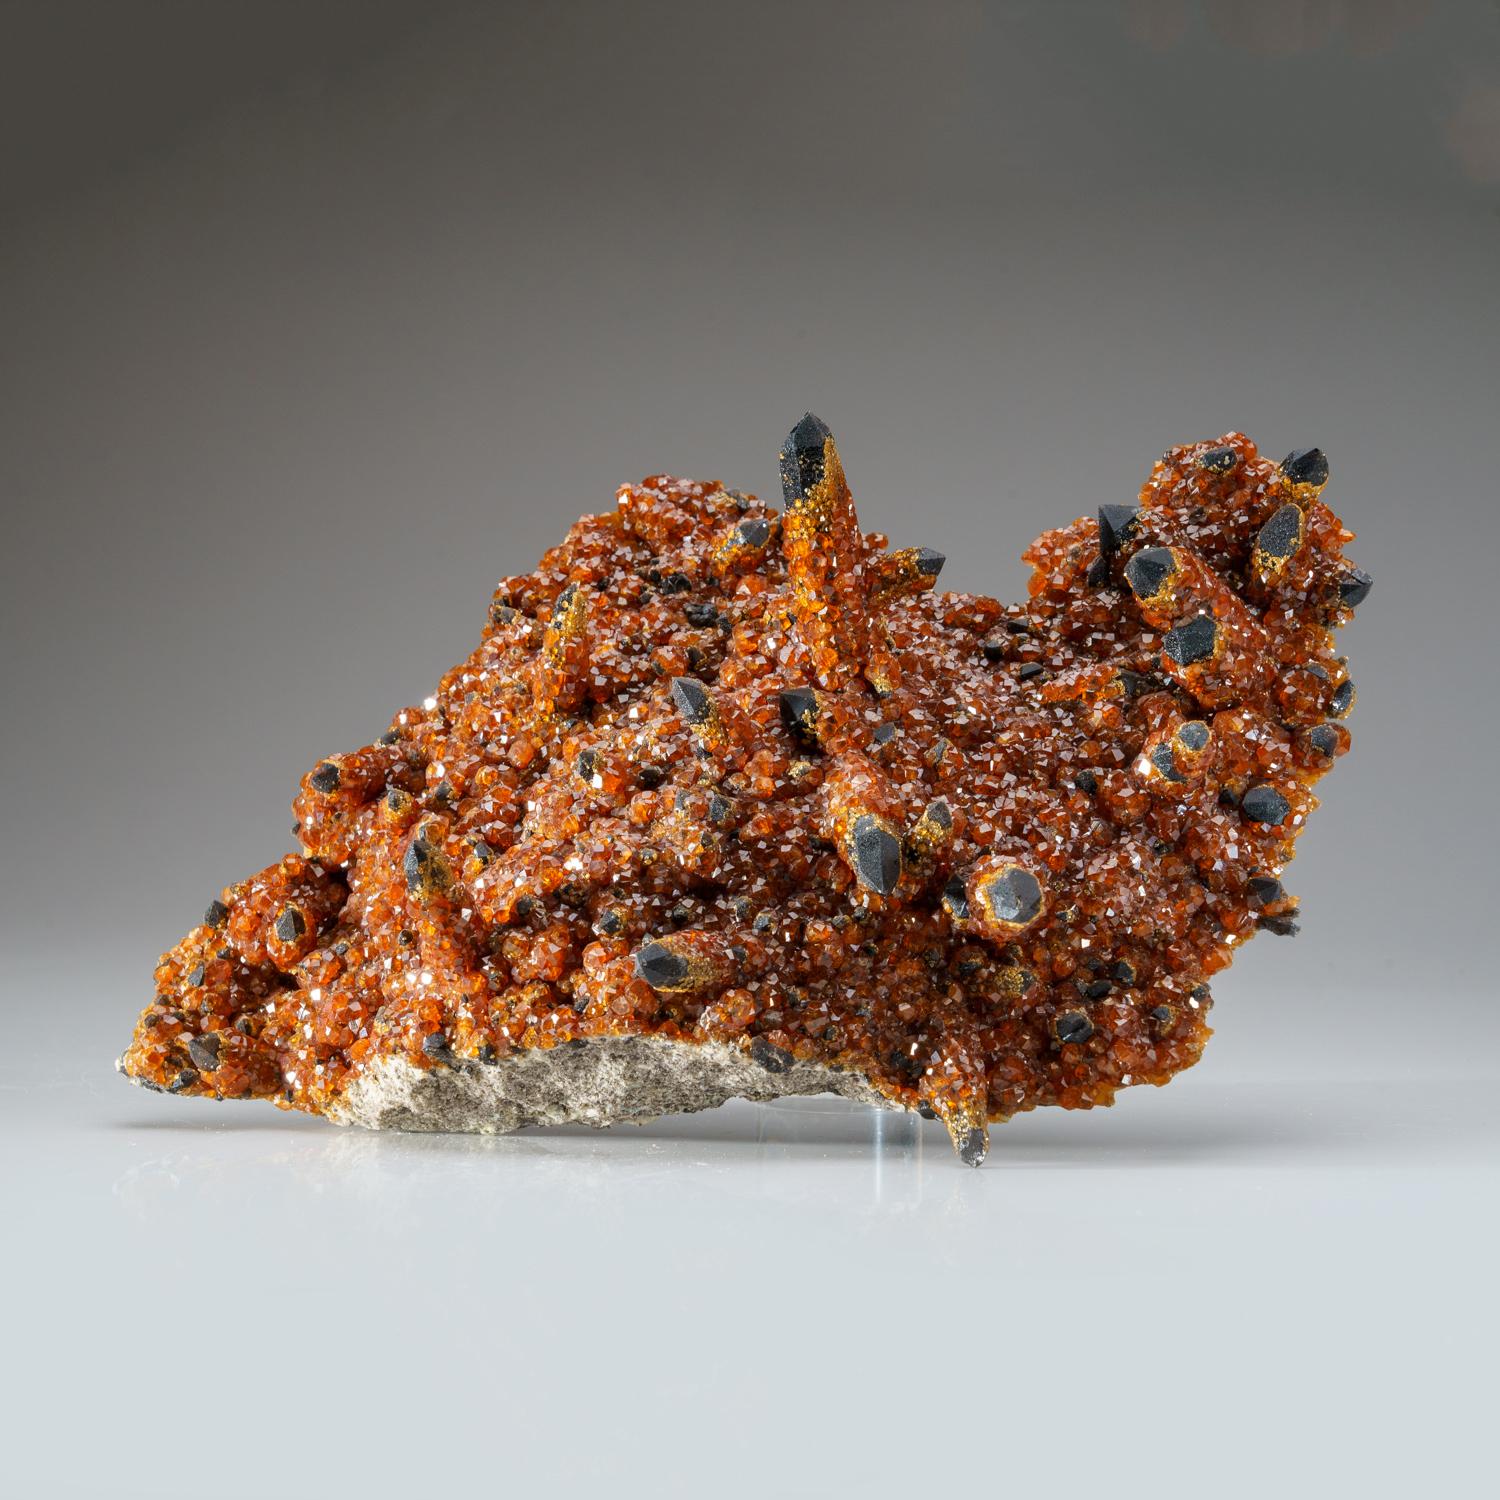 De la mine de spessartine de Wushan, district de Tongbei-Yunling, province de Fujian, Chine

Grand spécimen de cristaux de grenat spessartine rouge foncé transparent et lustré sur du quartz fumé entièrement terminé et lustré. Les grenats sont de